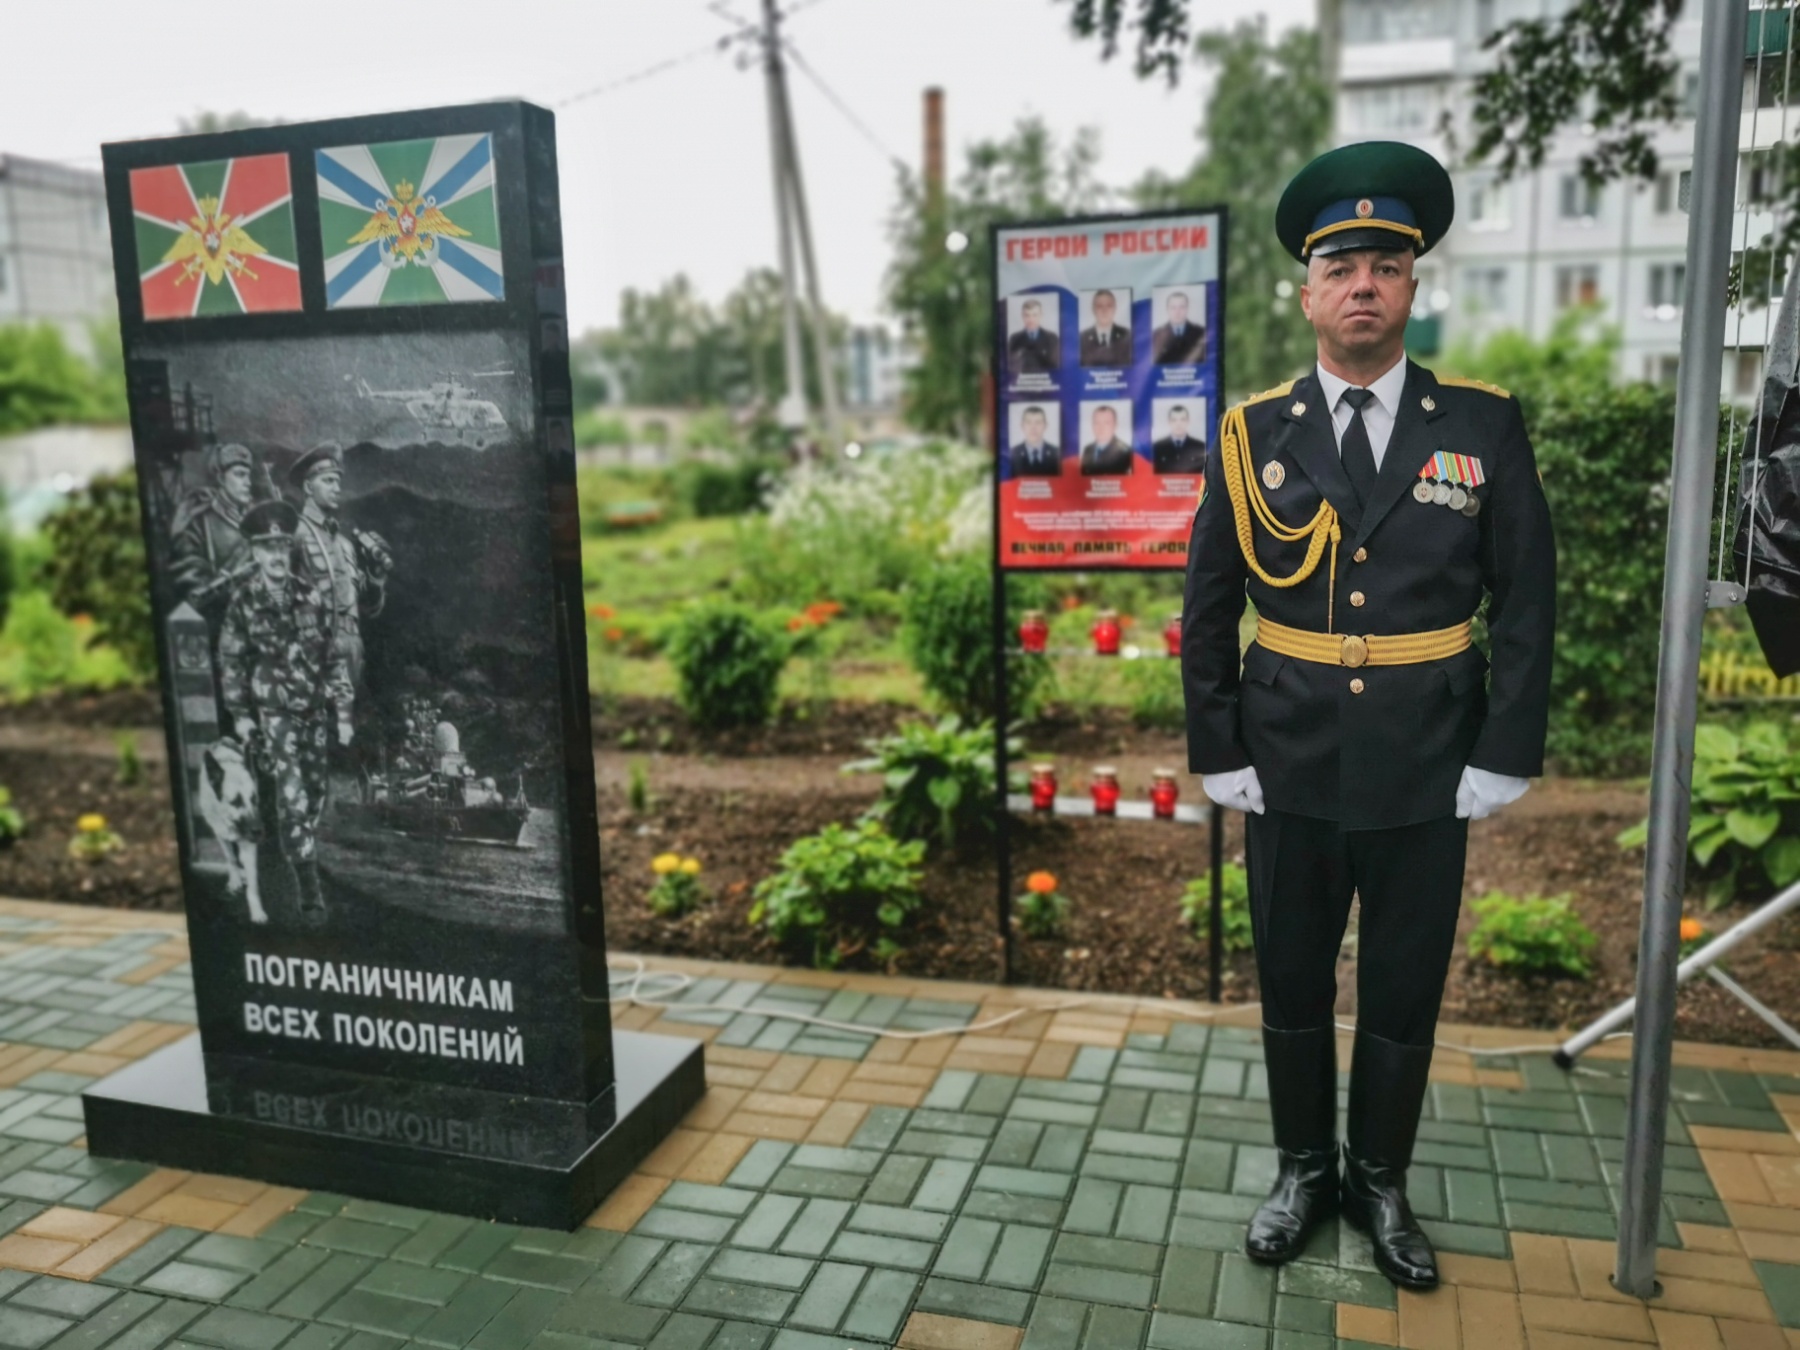 В Карачеве открыли памятник «Пограничникам всех поколений»